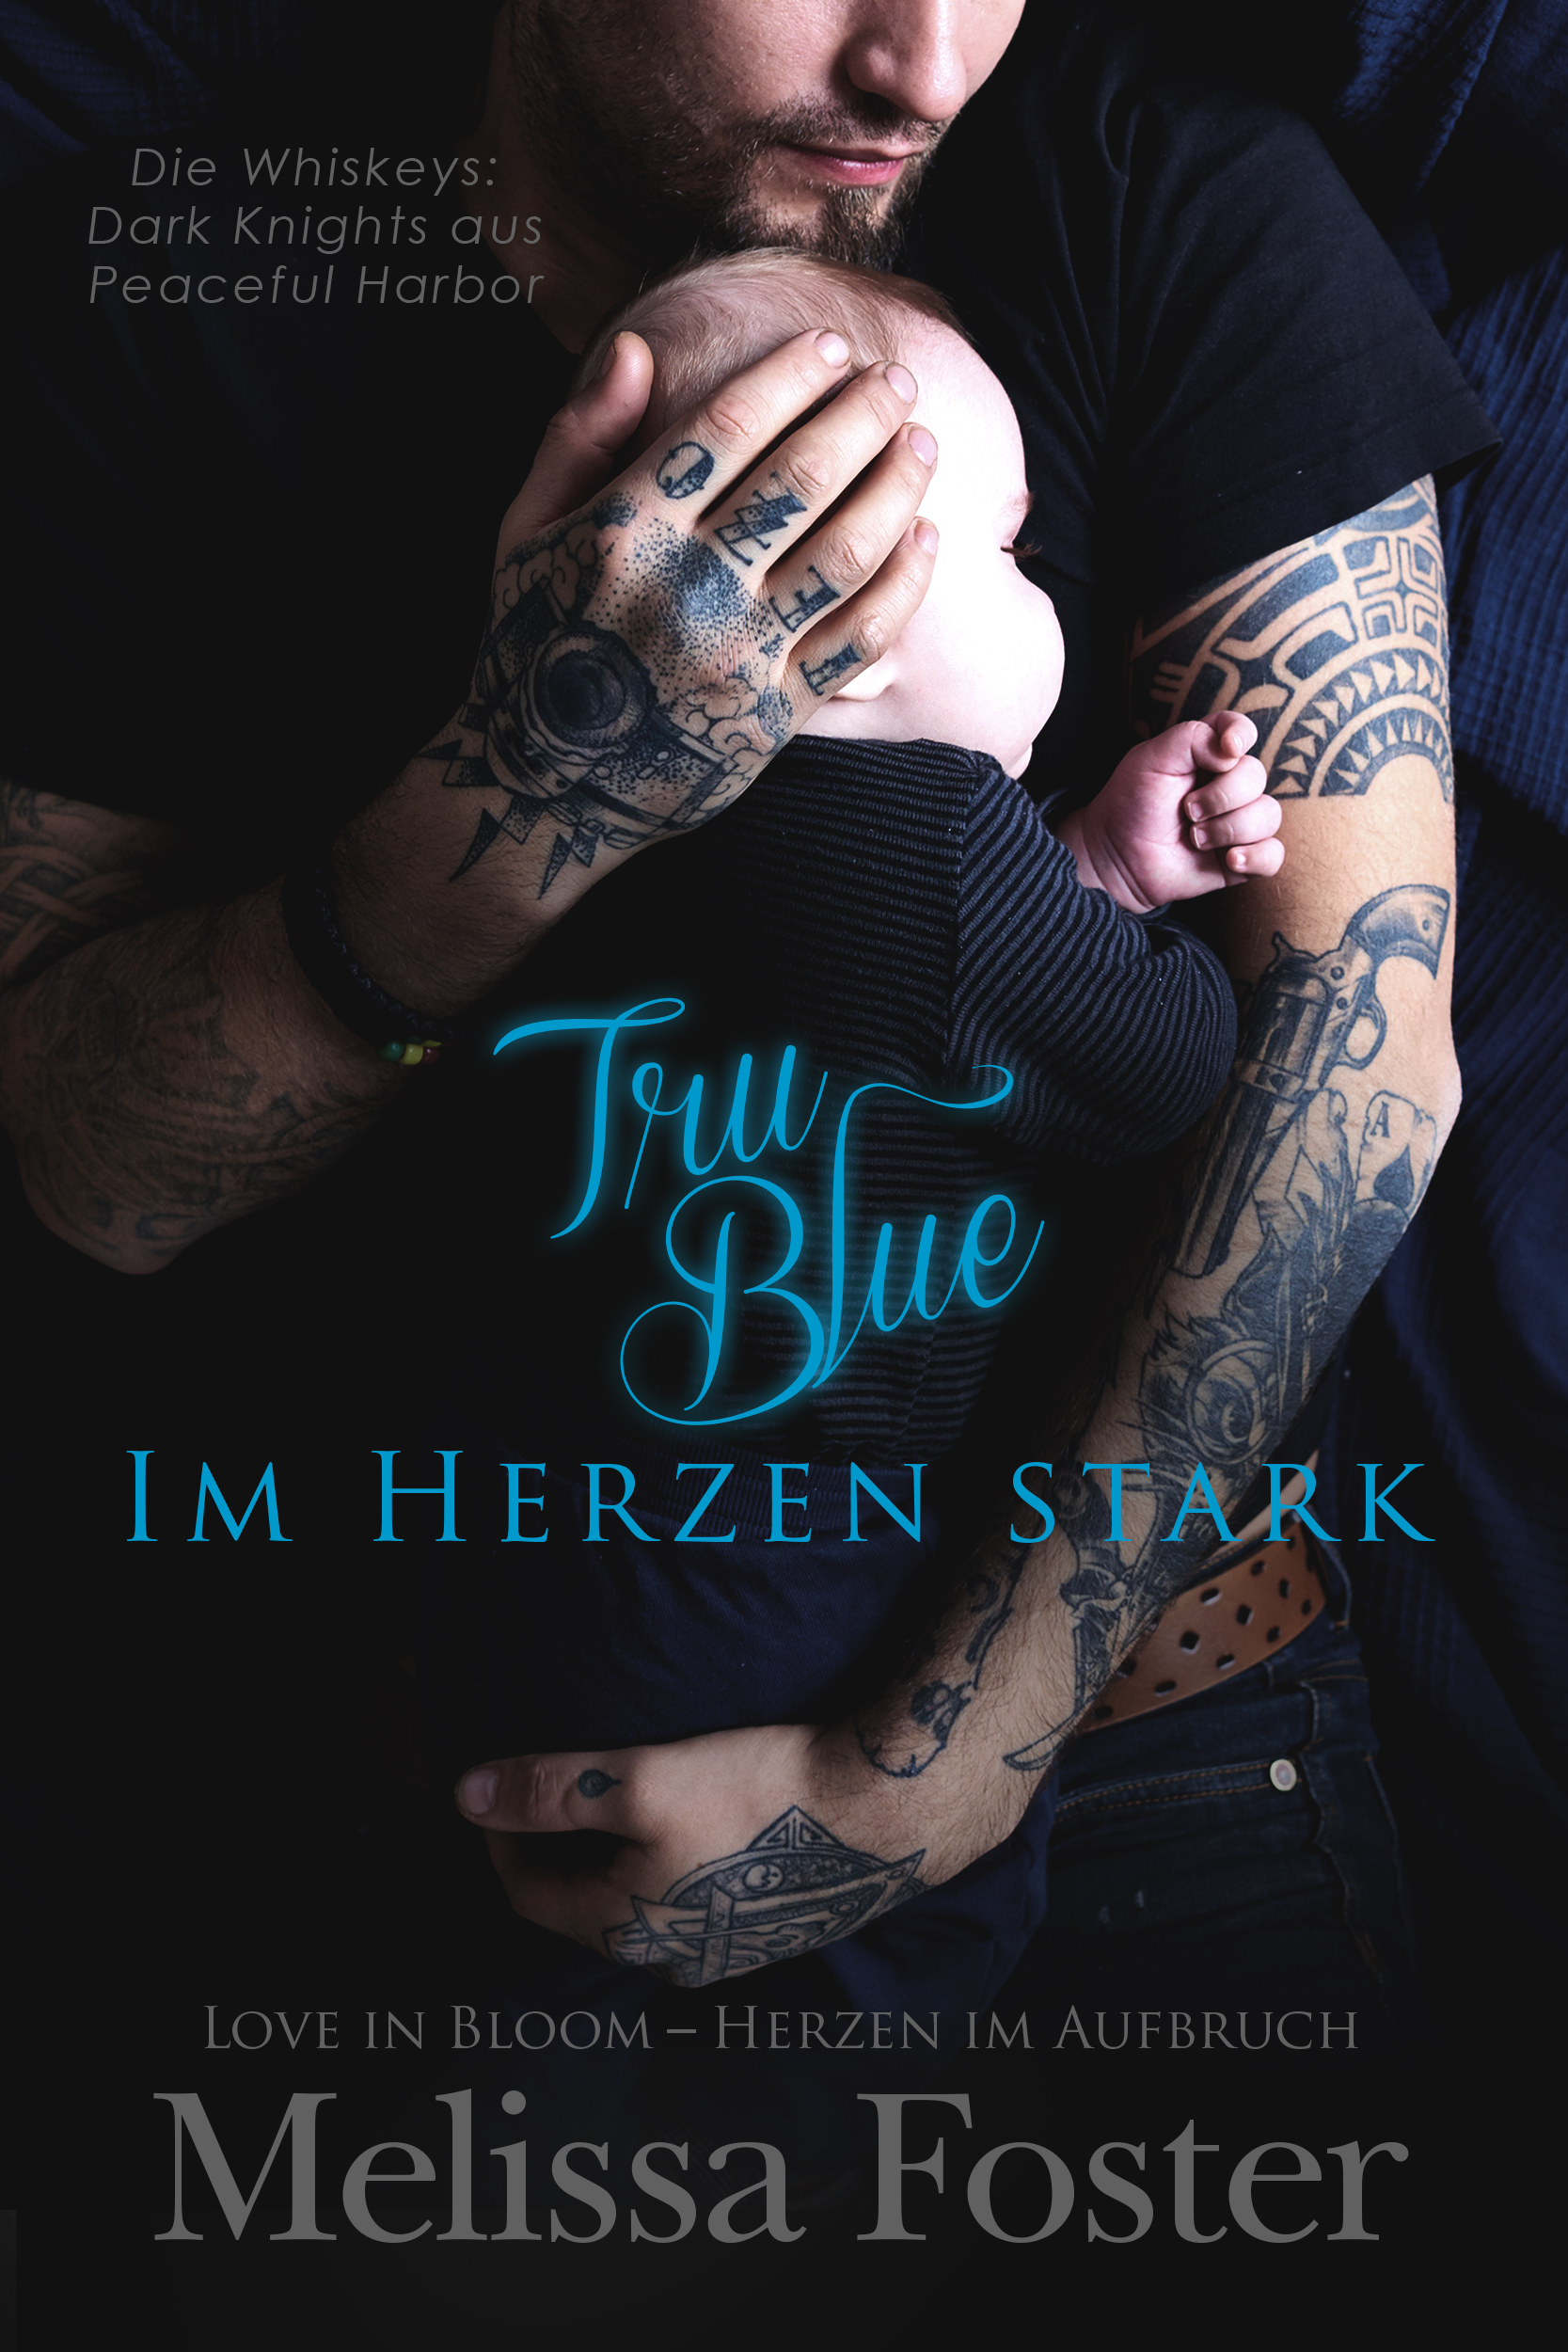 Tru Blue – Im Herzen stark by Melissa Foster